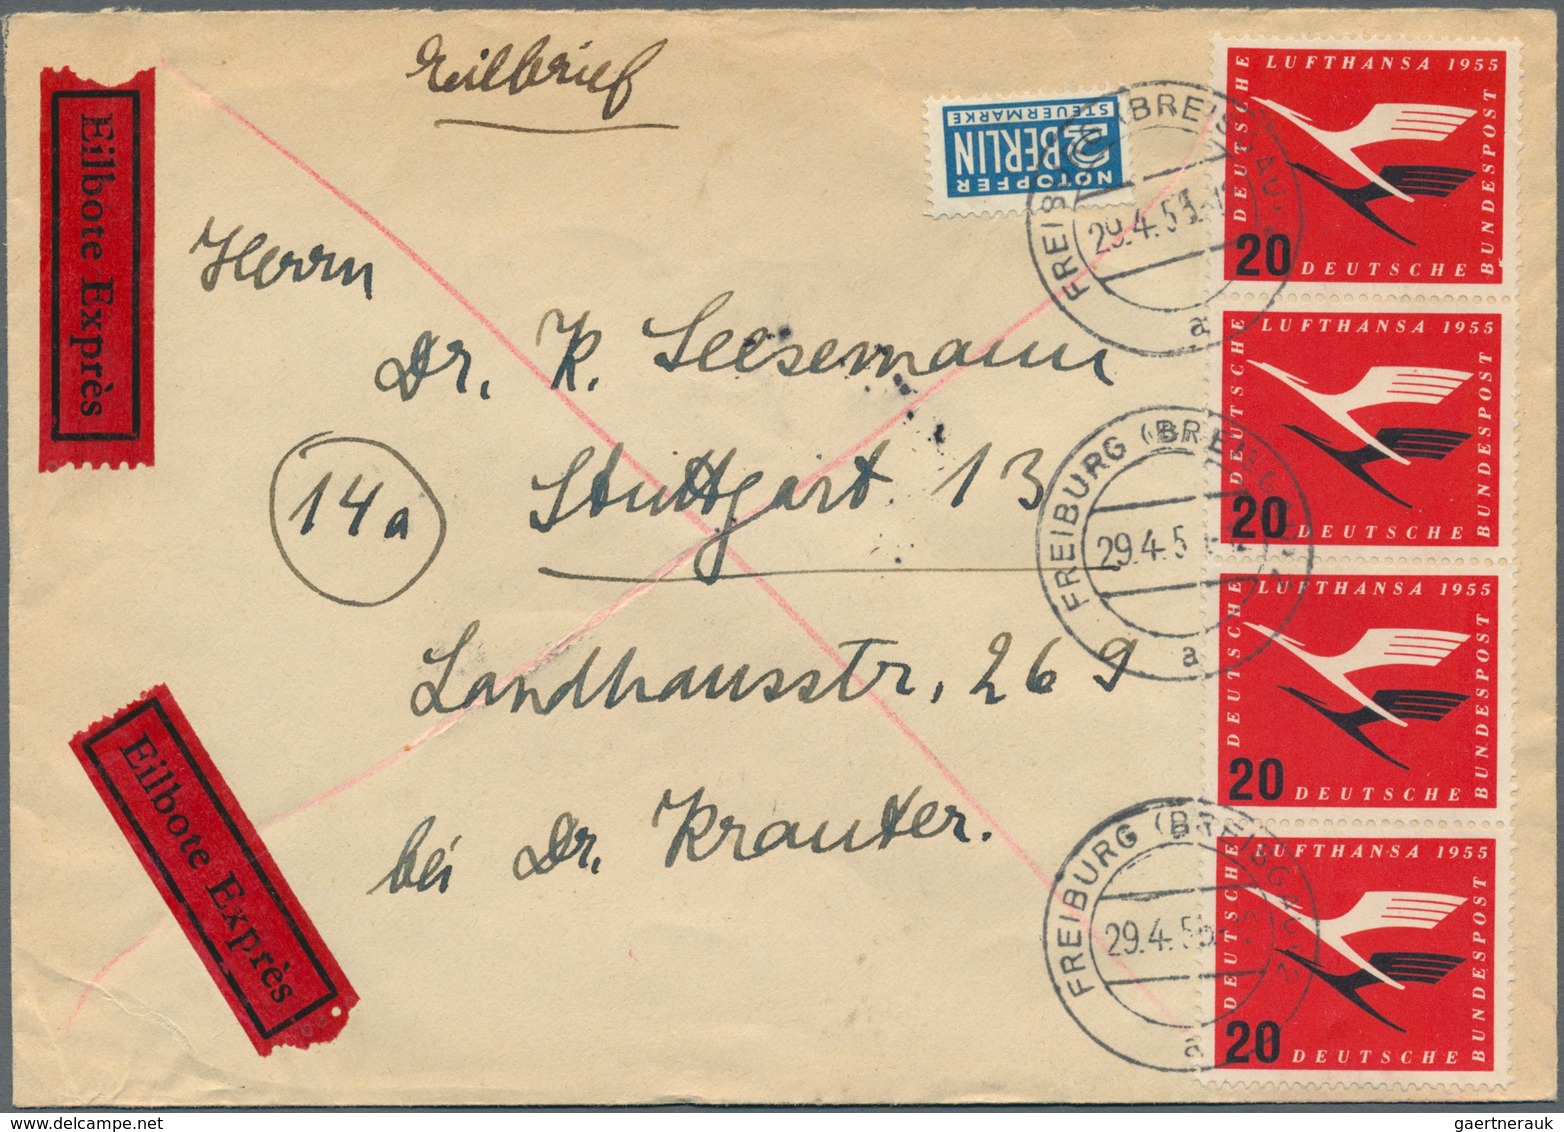 Bundesrepublik Deutschland: 1949/1959, gehaltvolle und nahezu komplette Sammlung mit Frankaturen von